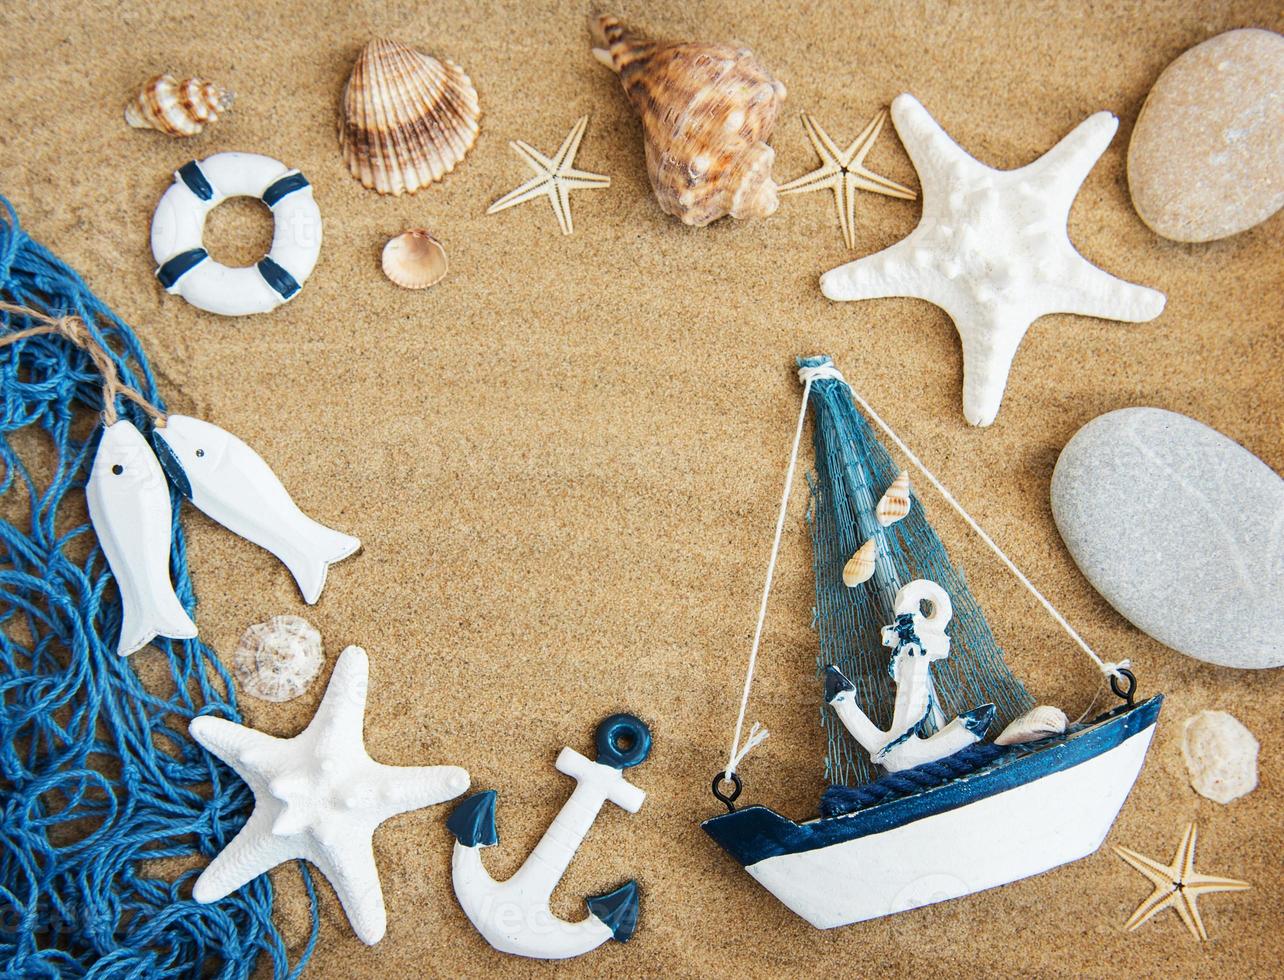 conchiglie e decorazioni marine con corda foto